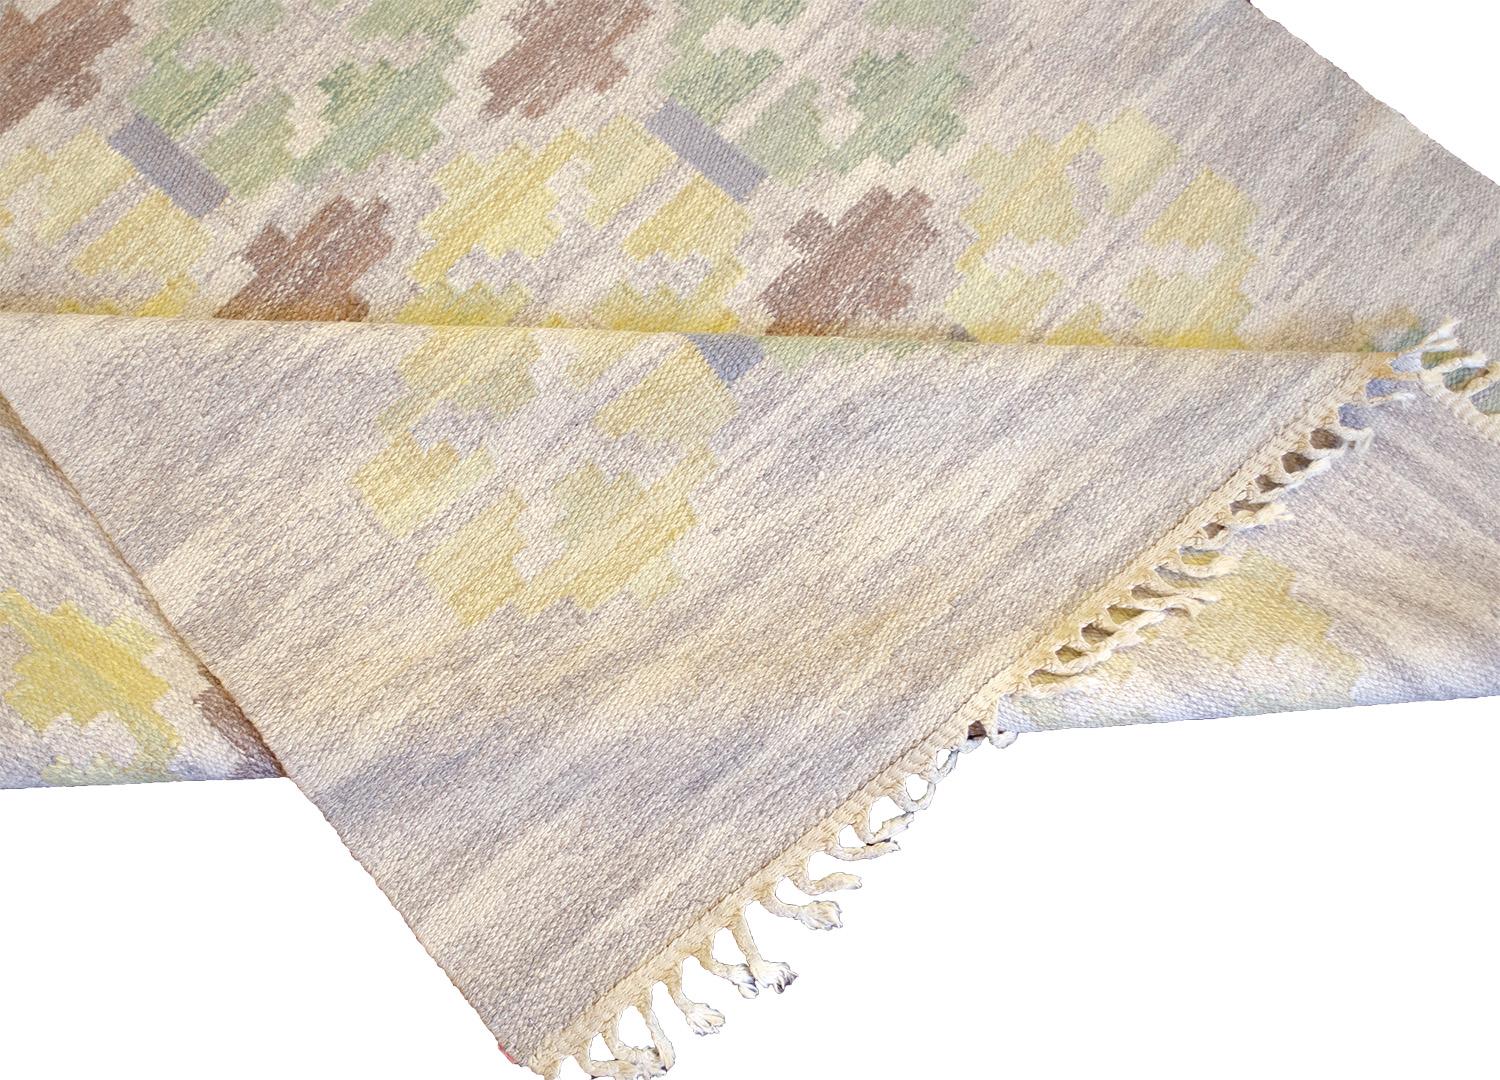 Dieser alte handgewebte schwedische Teppich hat ein schattiertes graues und elfenbeinfarbenes Gesamtfeld mit einem eleganten, abwechselnd gestuften, stilisierten Kartuschen-Raute-Gitter.